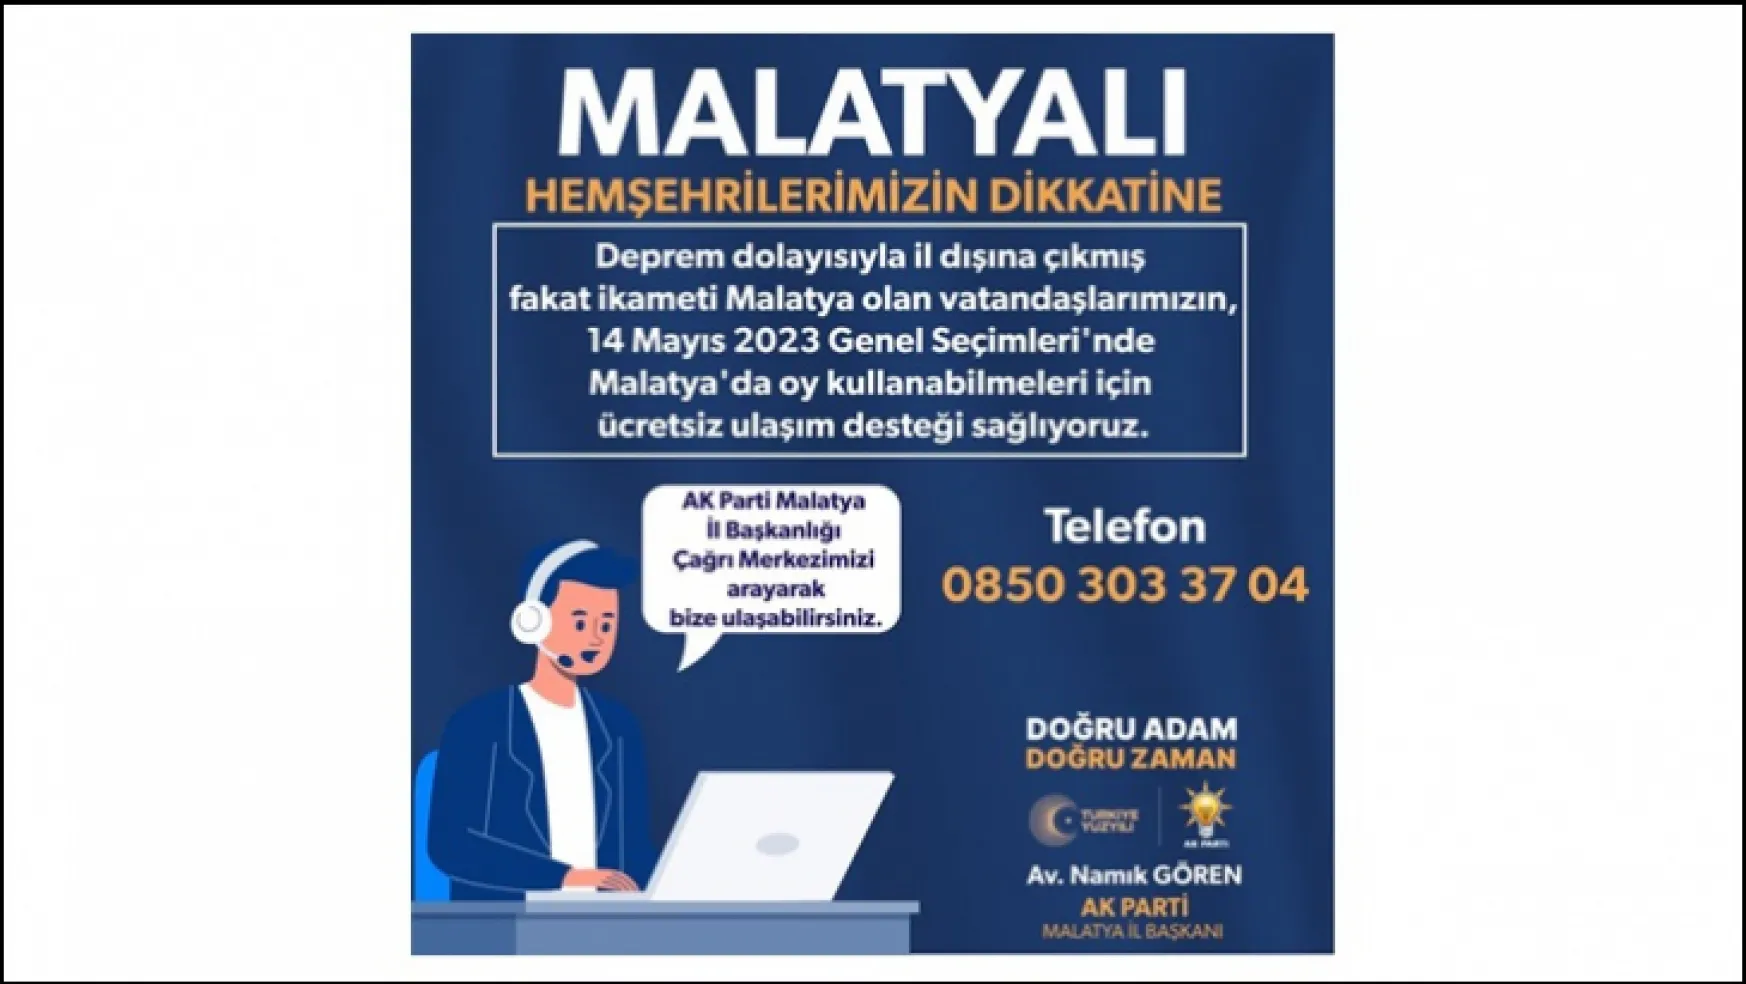 AK Parti'den Malatya'ya gelecek seçmenlere ücretsiz ulaşım desteği